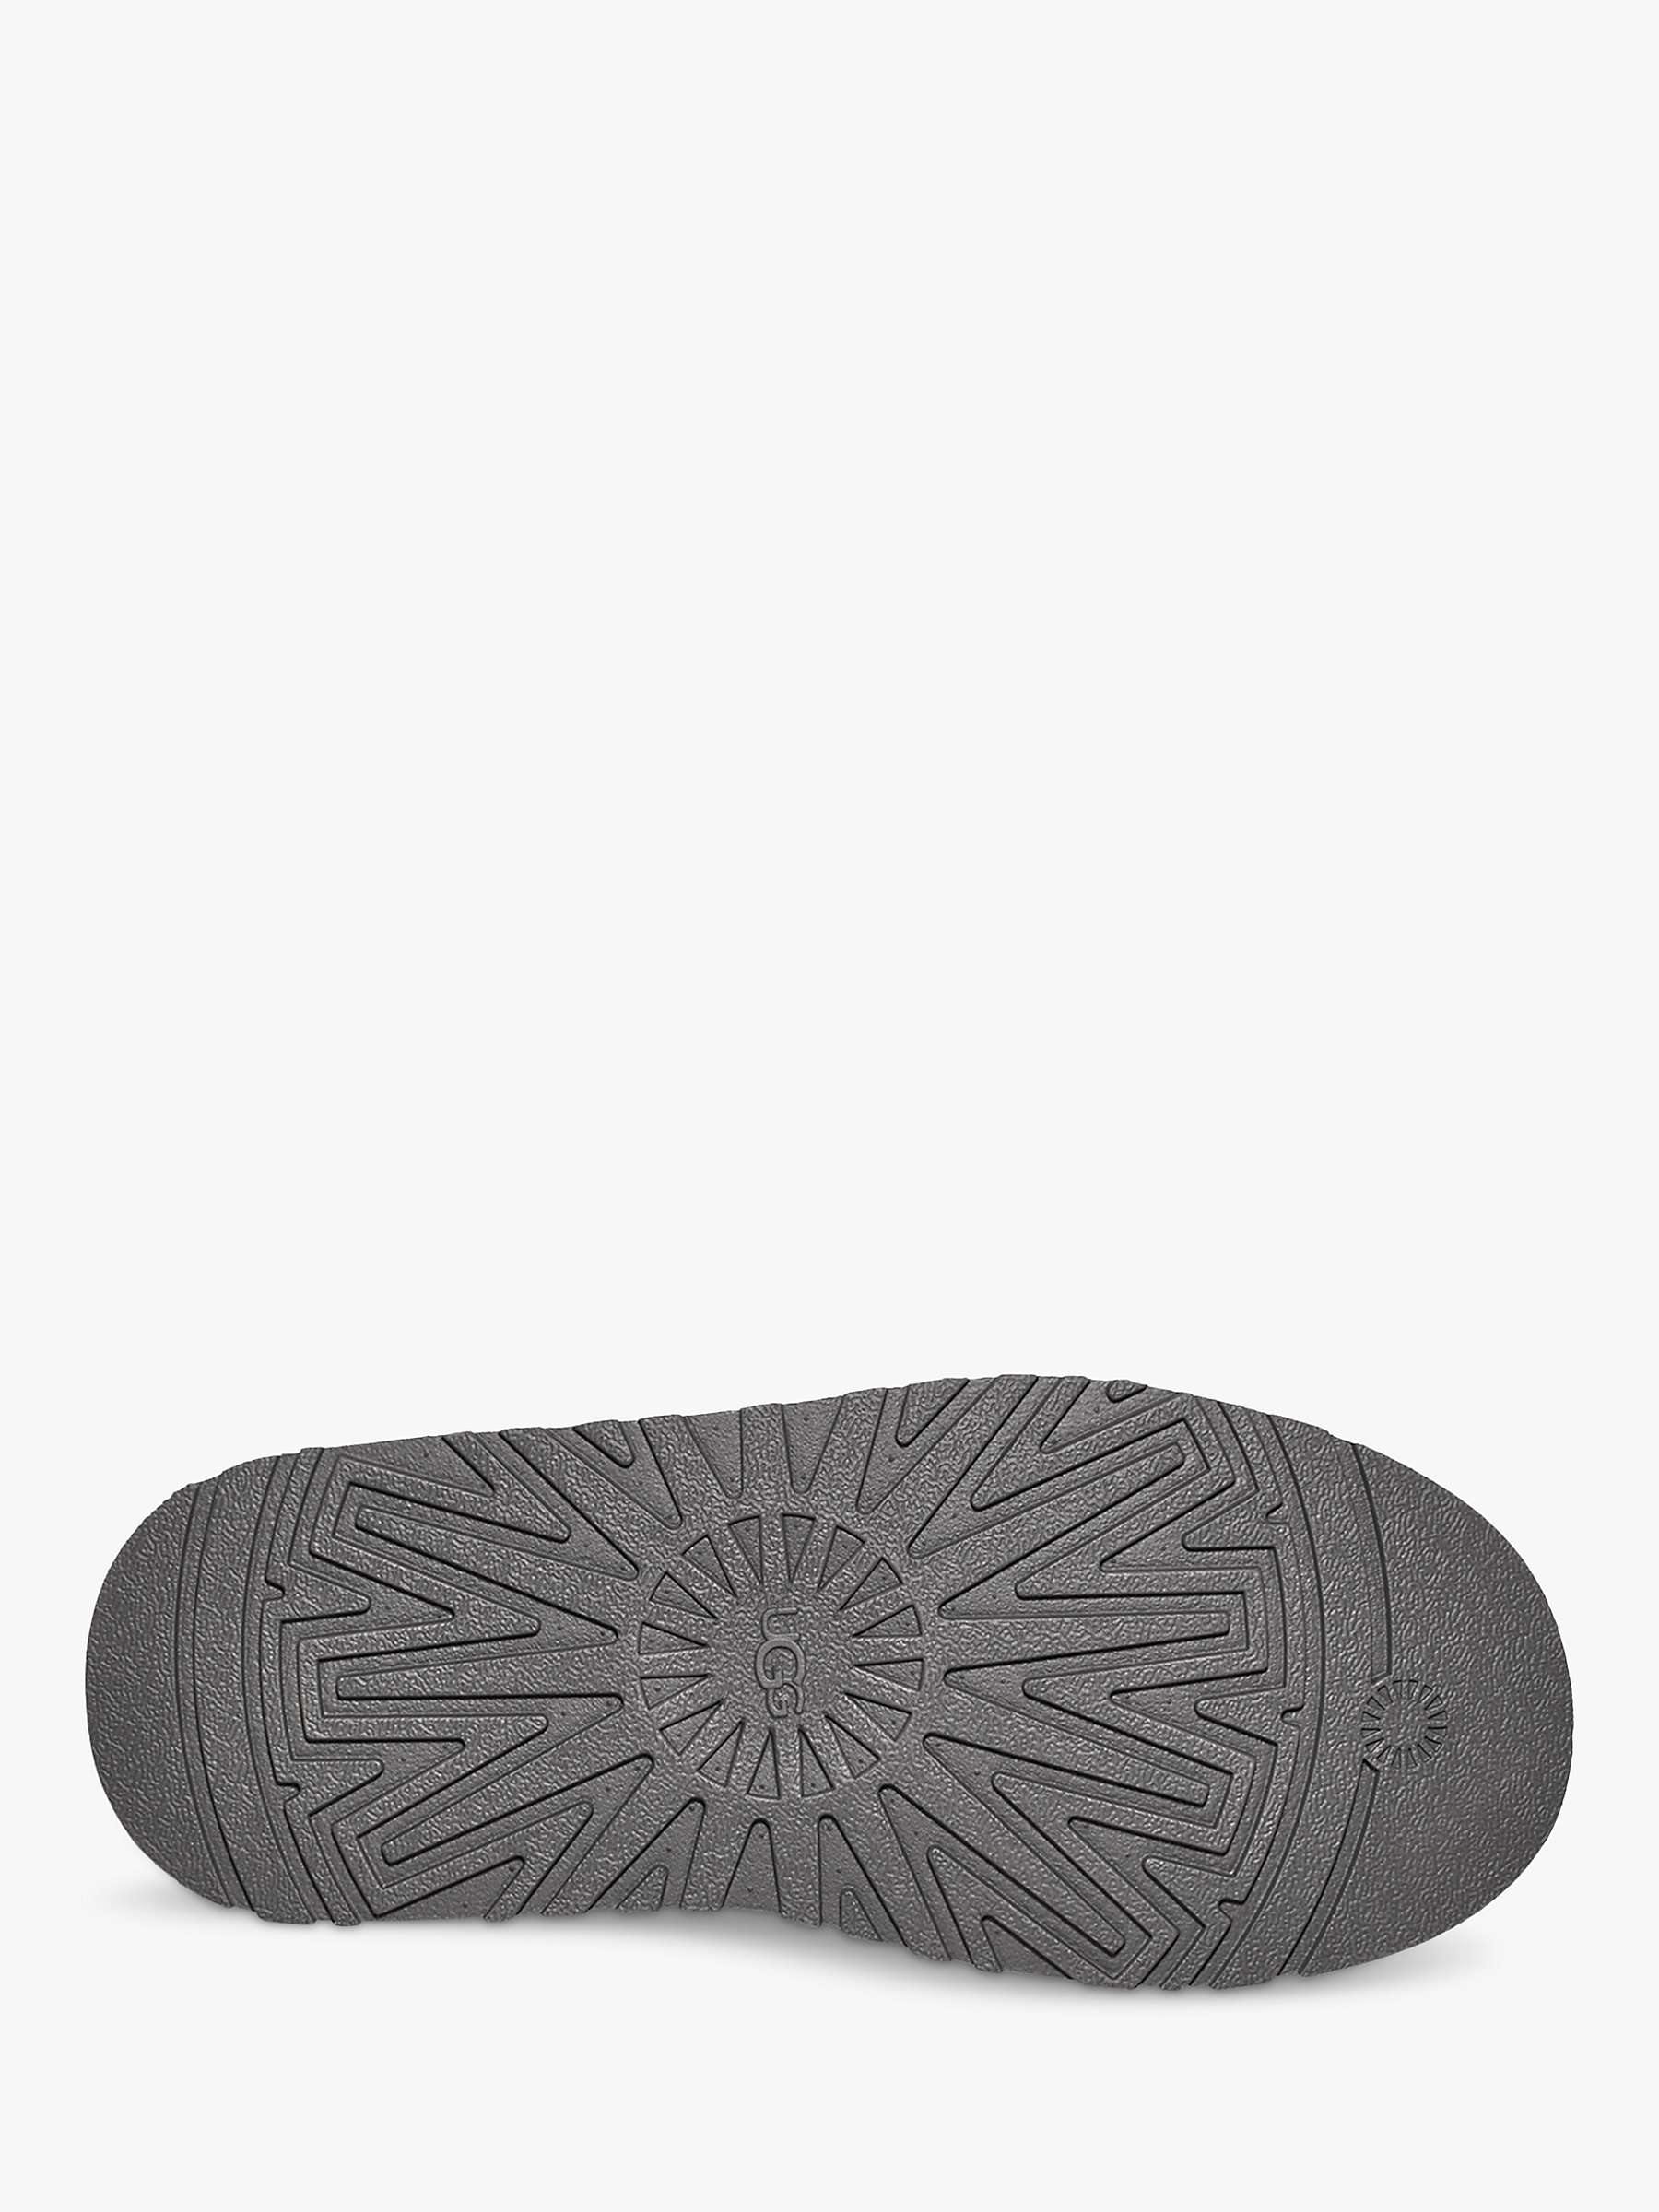 Buy UGG Tazzle Suede Platform Slippers, Chestnut Online at johnlewis.com